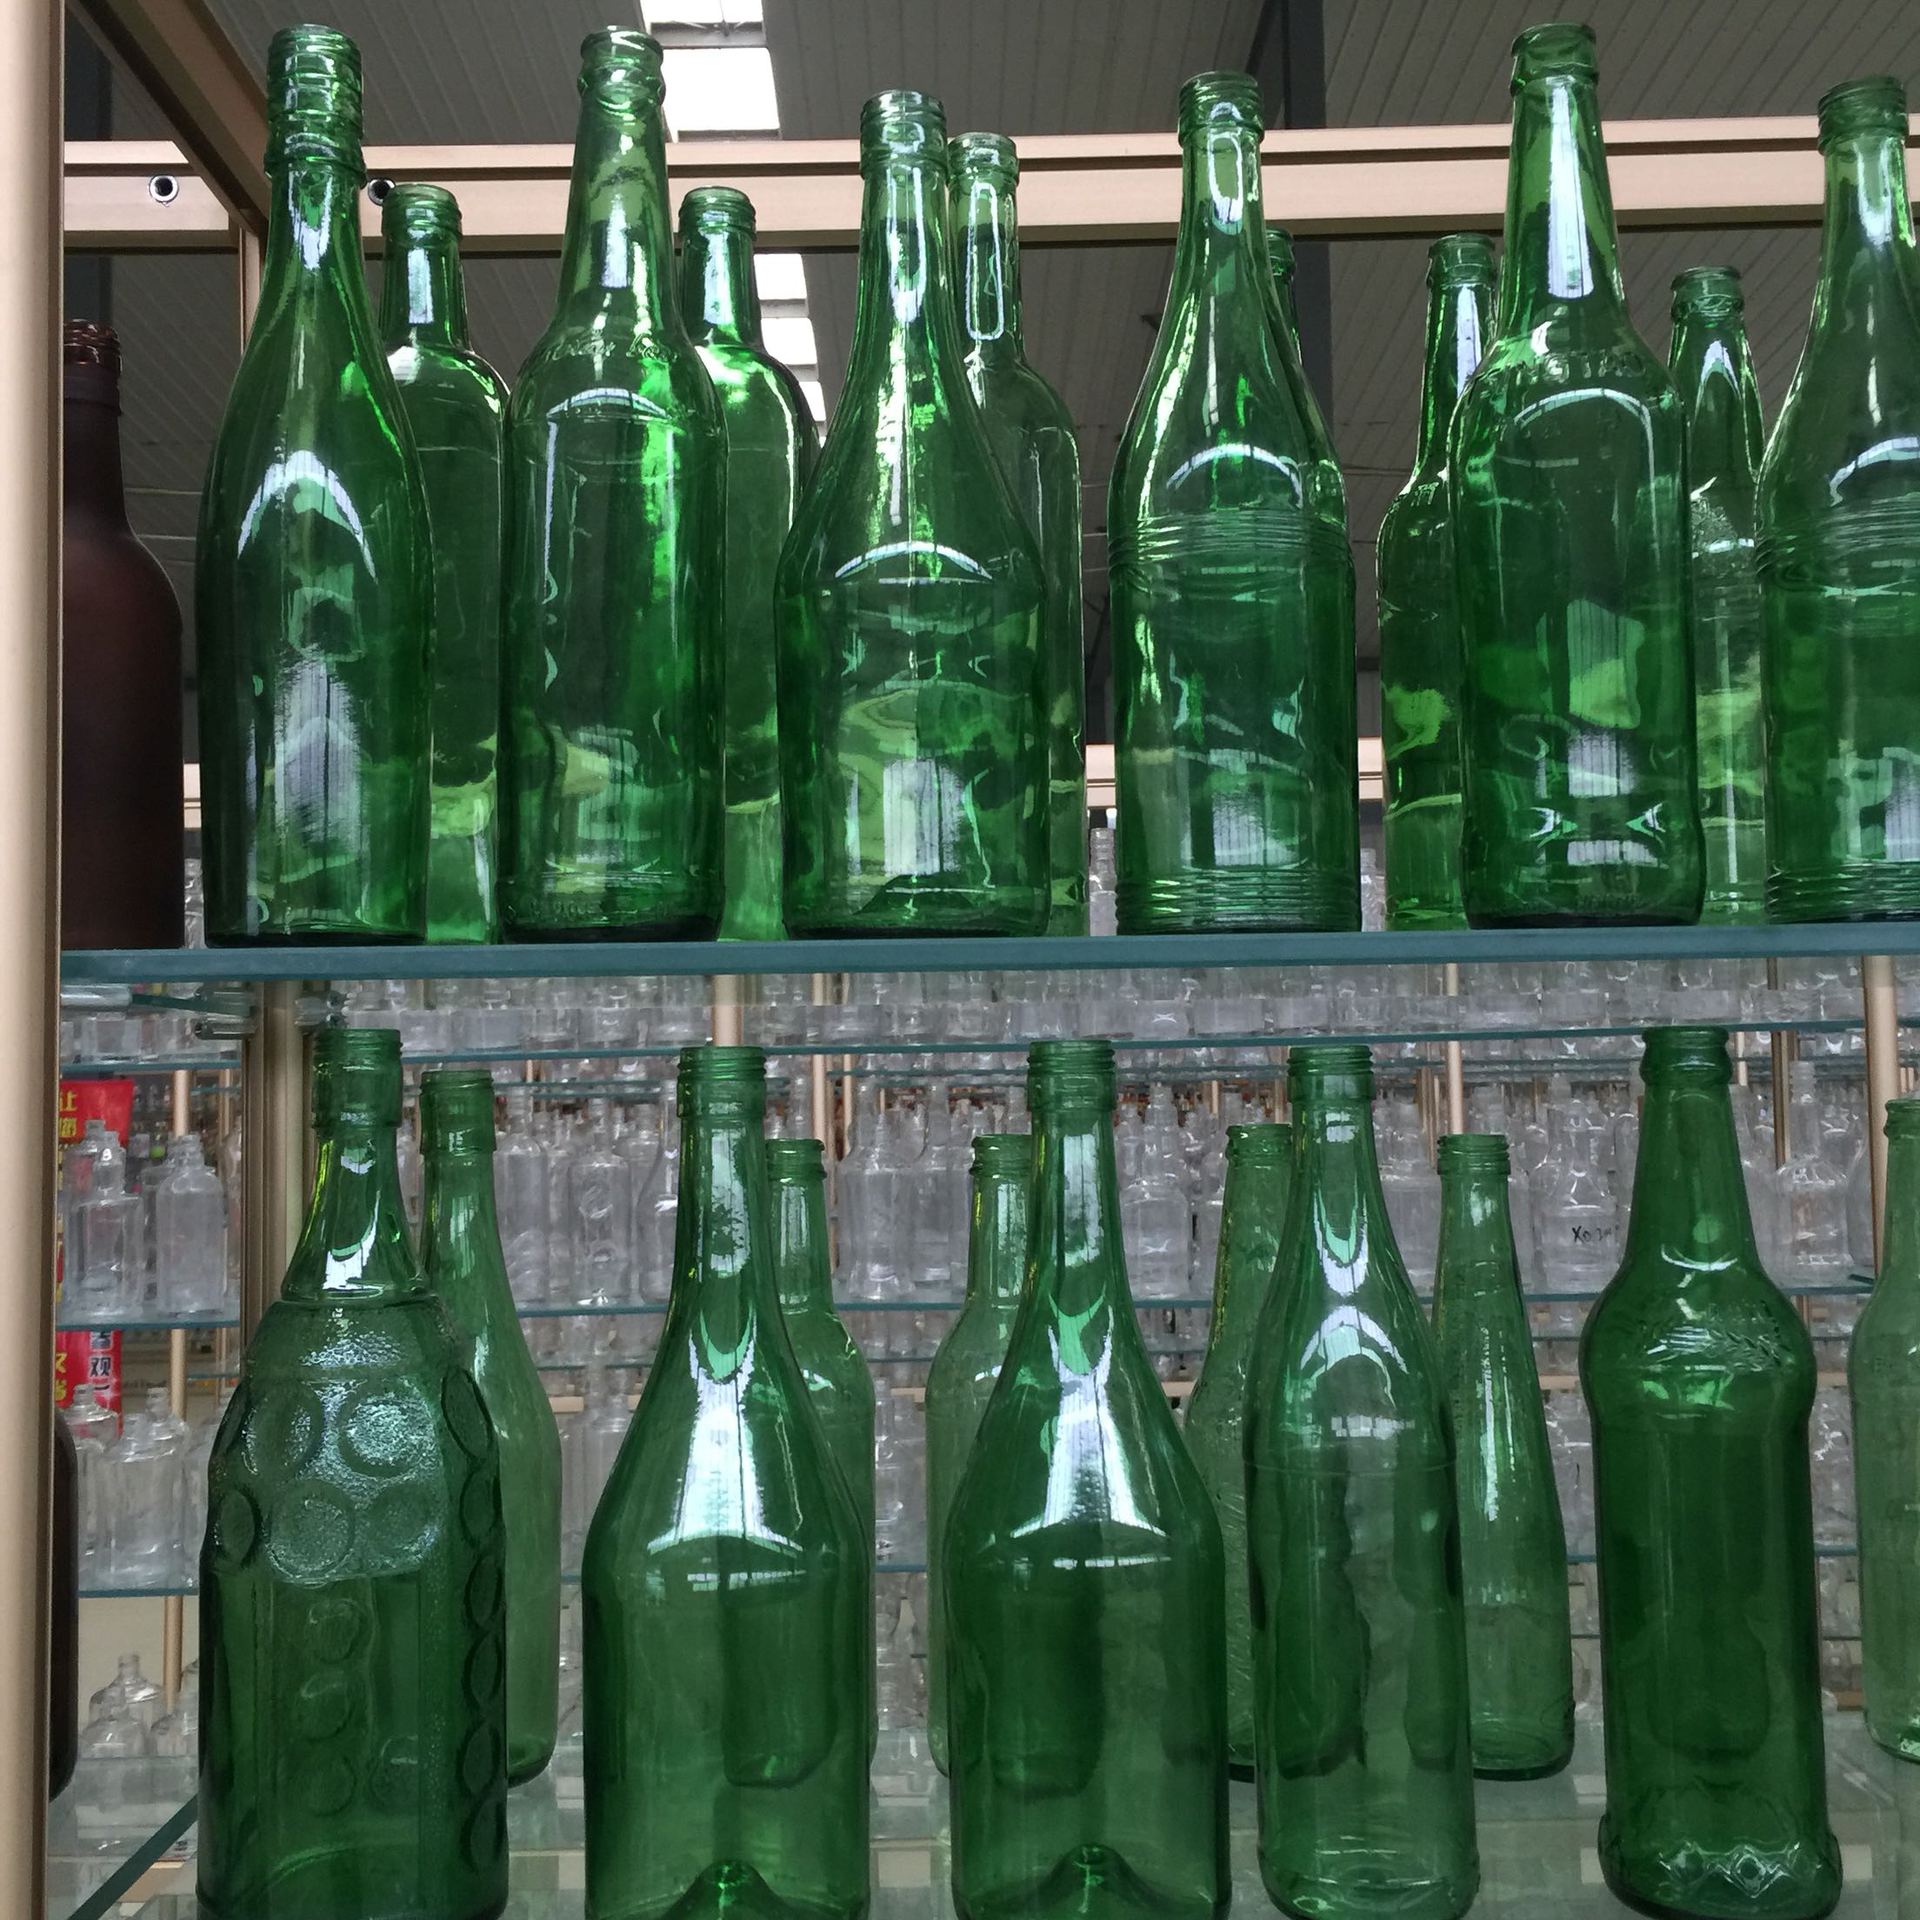 500ml绿色 深蓝色 茶色 白酒玻璃瓶 蓝宝石酒瓶翠绿色白酒瓶定做示例图2